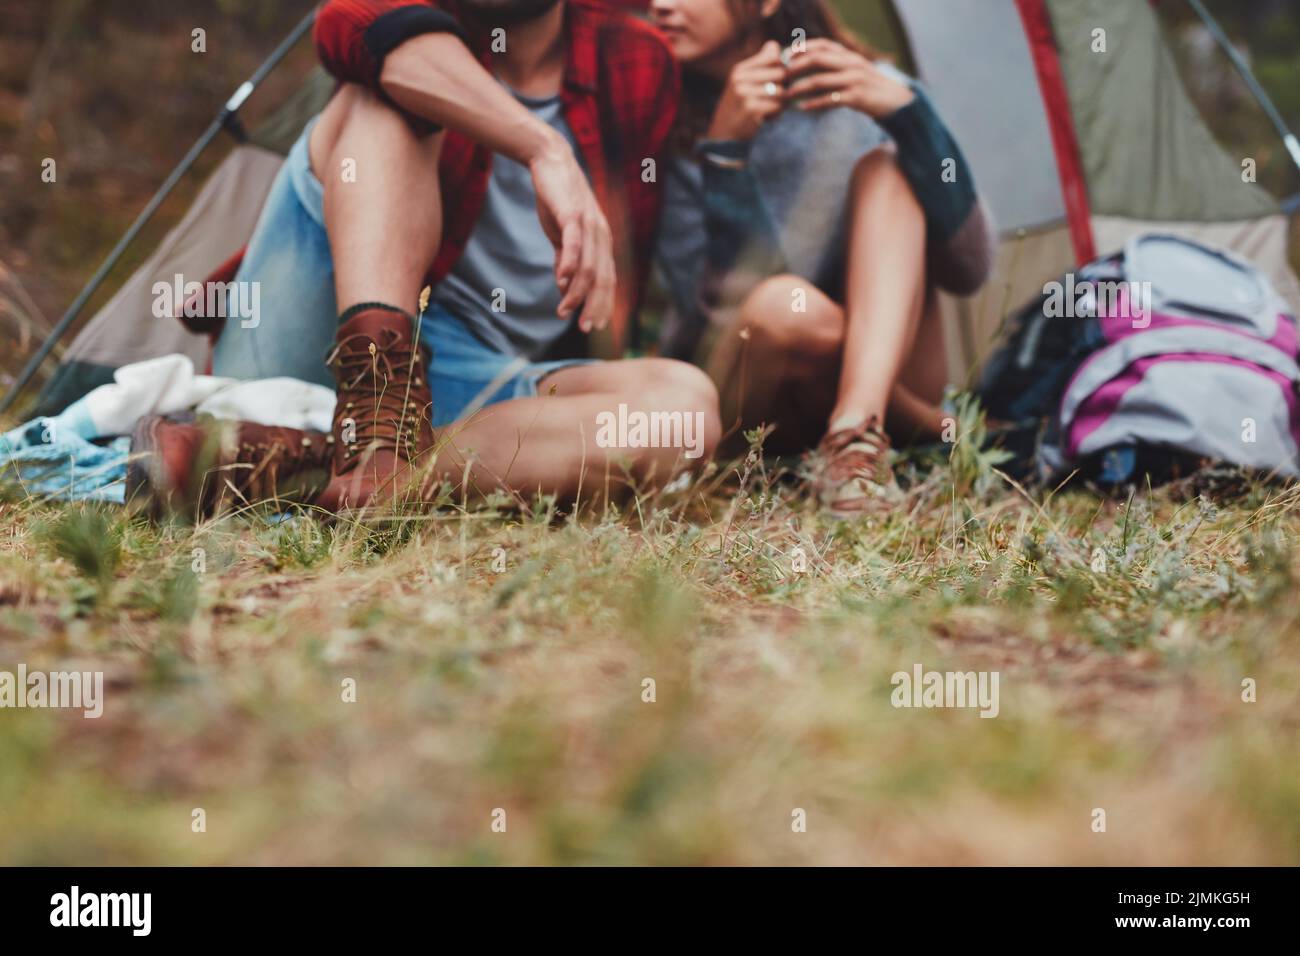 Pareja joven romántica sentada fuera de una tienda de camping. Pareja joven aventurera disfrutando juntos de sus vacaciones de camping. Foto de stock